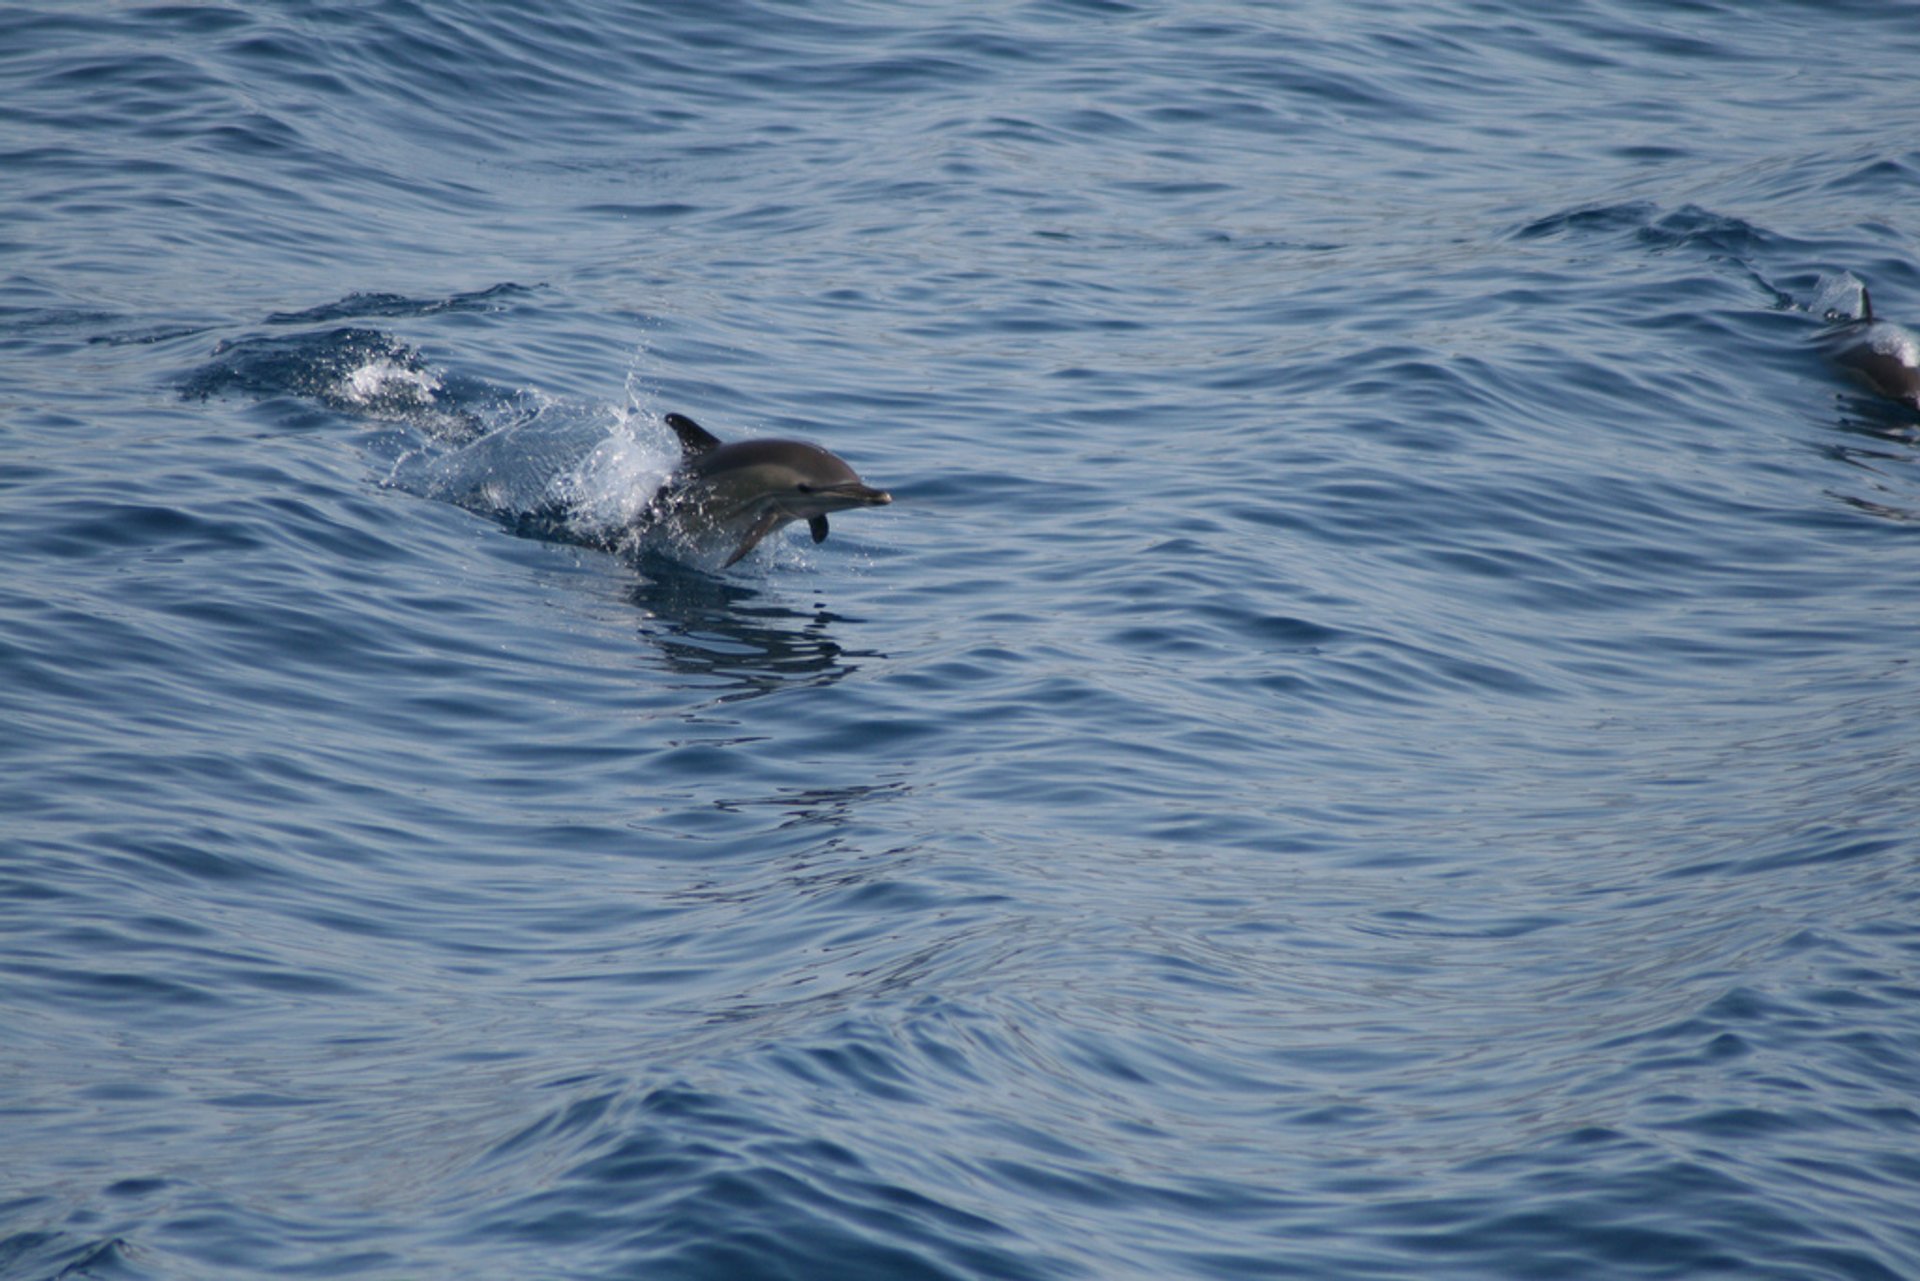 Delfini e foche delle Sporadi